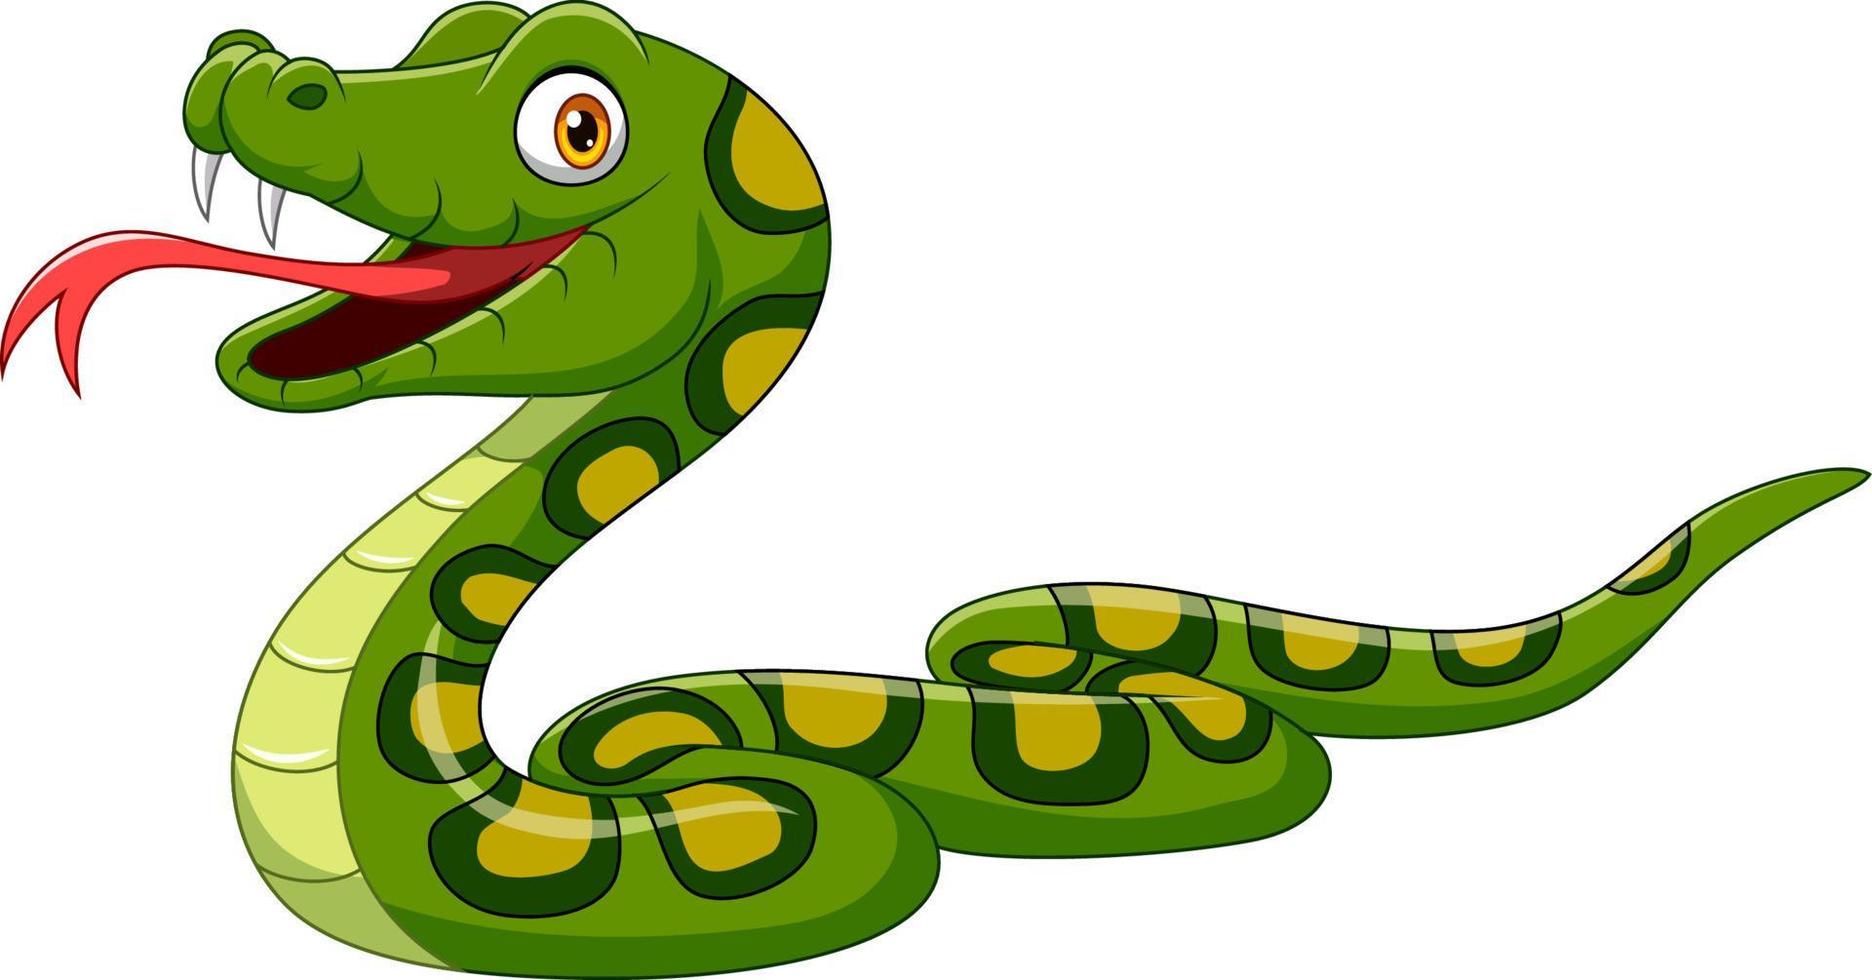 dessin animé serpent vert sur fond blanc vecteur